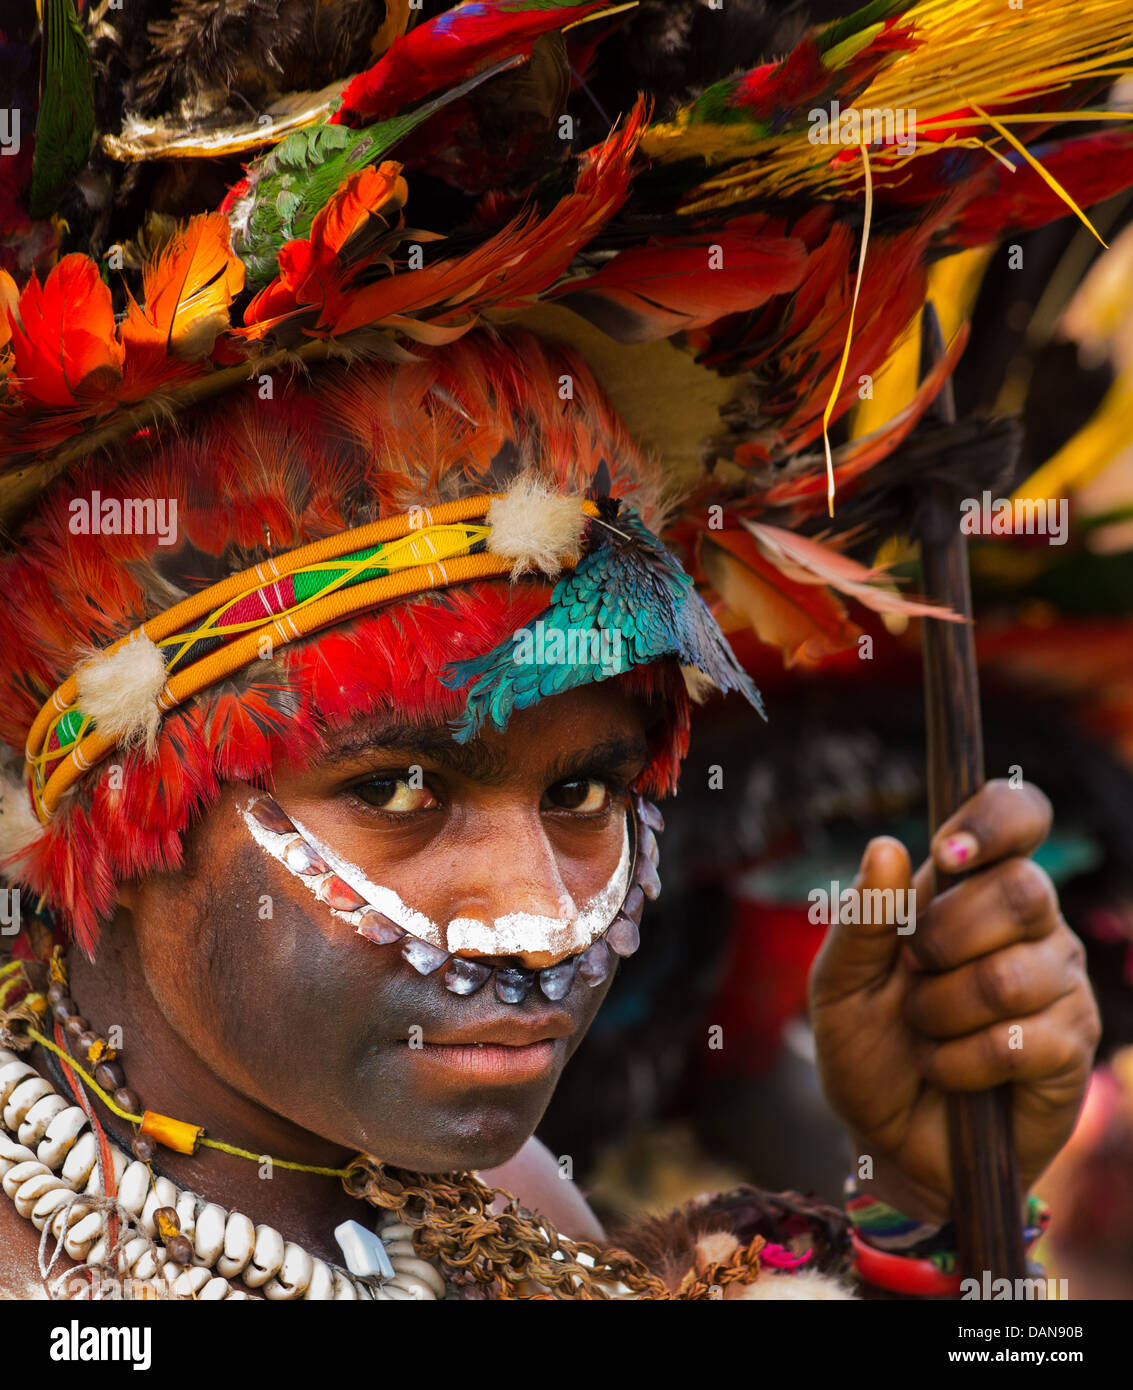 Jeune femme avec son visage peint et coiffés de plumes et de peaux d'animaux, Festival de Goroka, Papouasie Nouvelle Guinée Banque D'Images